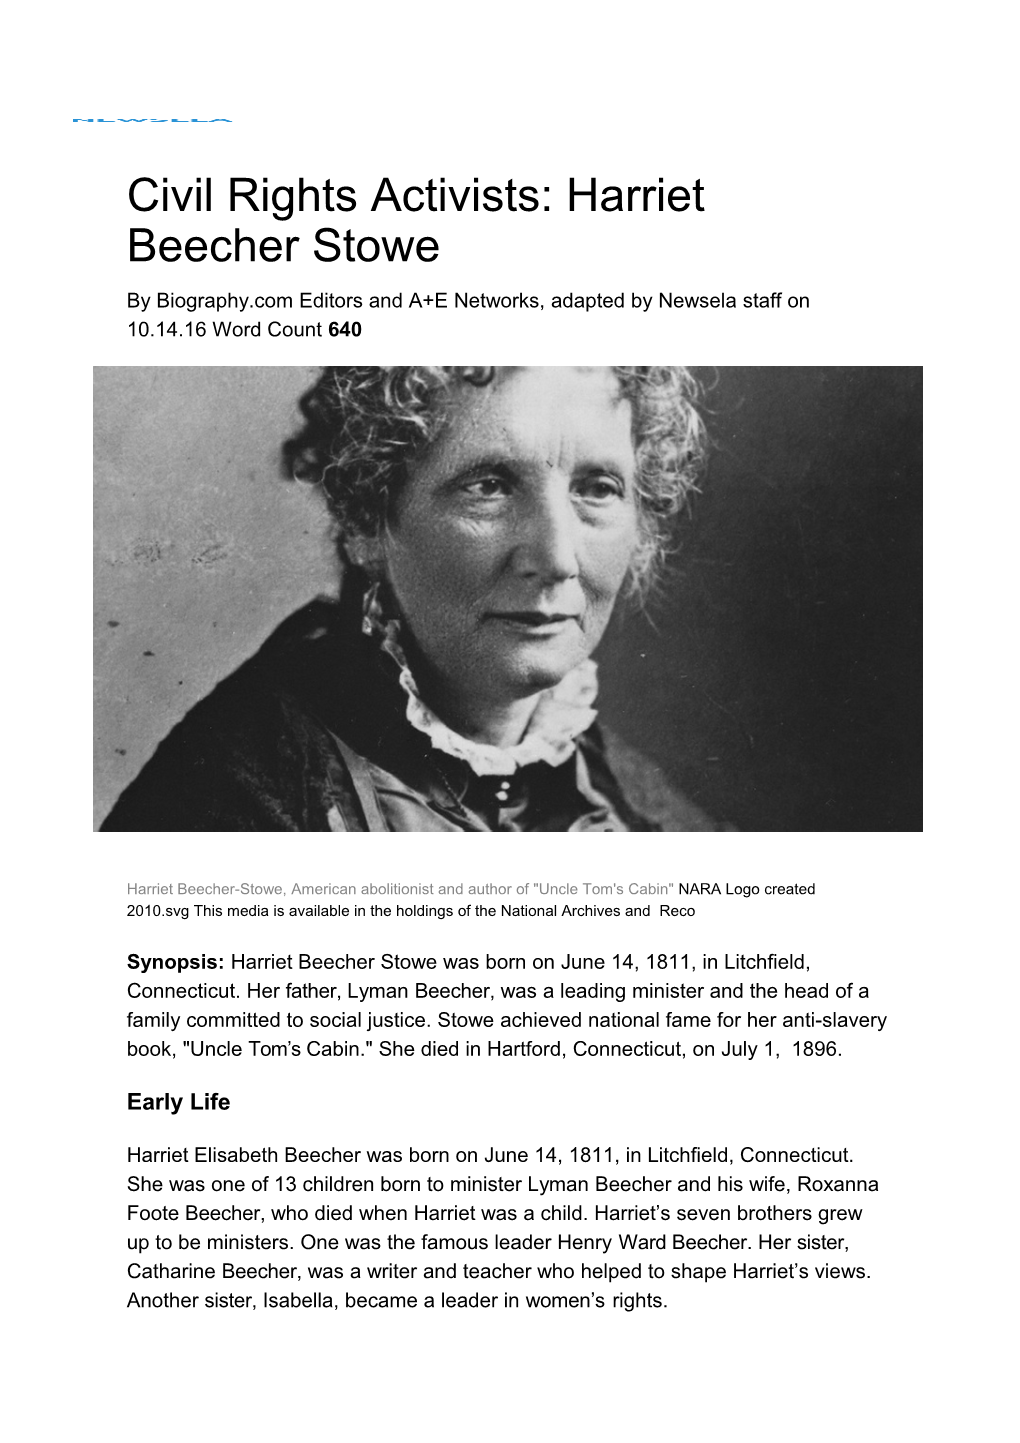 Civil Rights Activists: Harriet Beecher Stowe